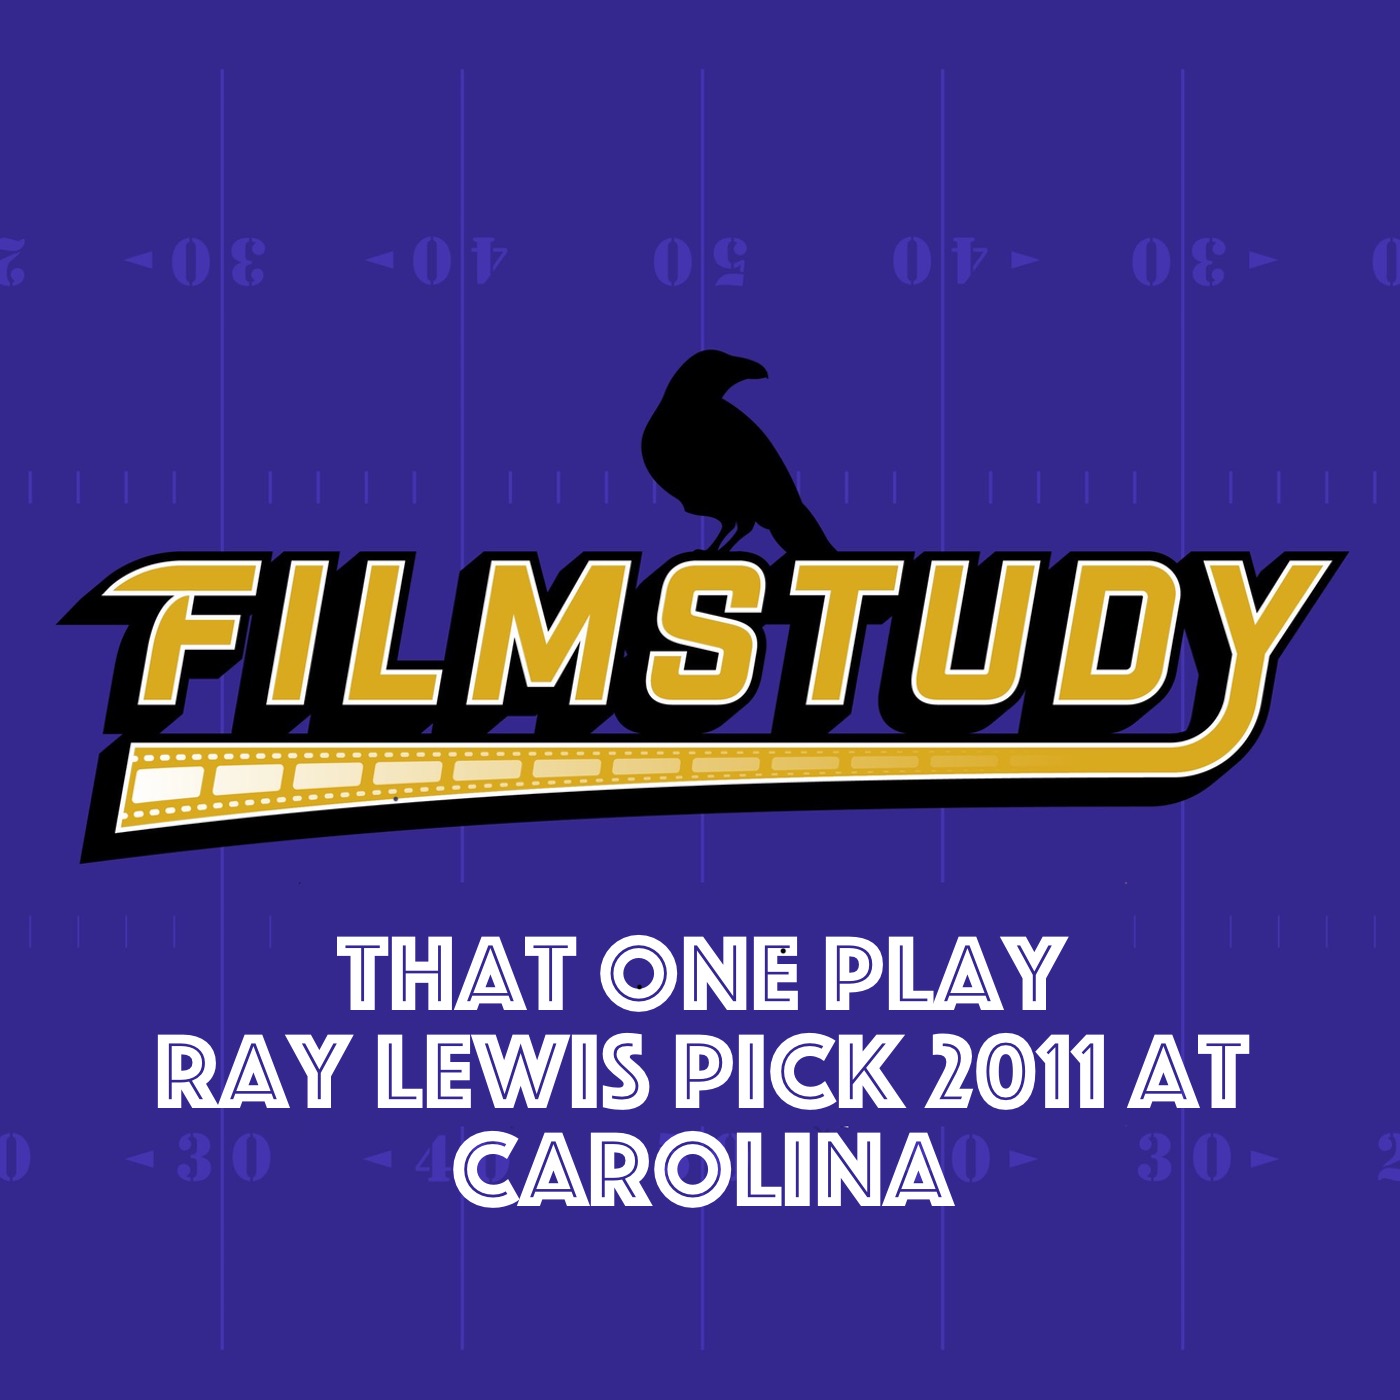 TOP : Ray Lewis pick 2011 at Carolina